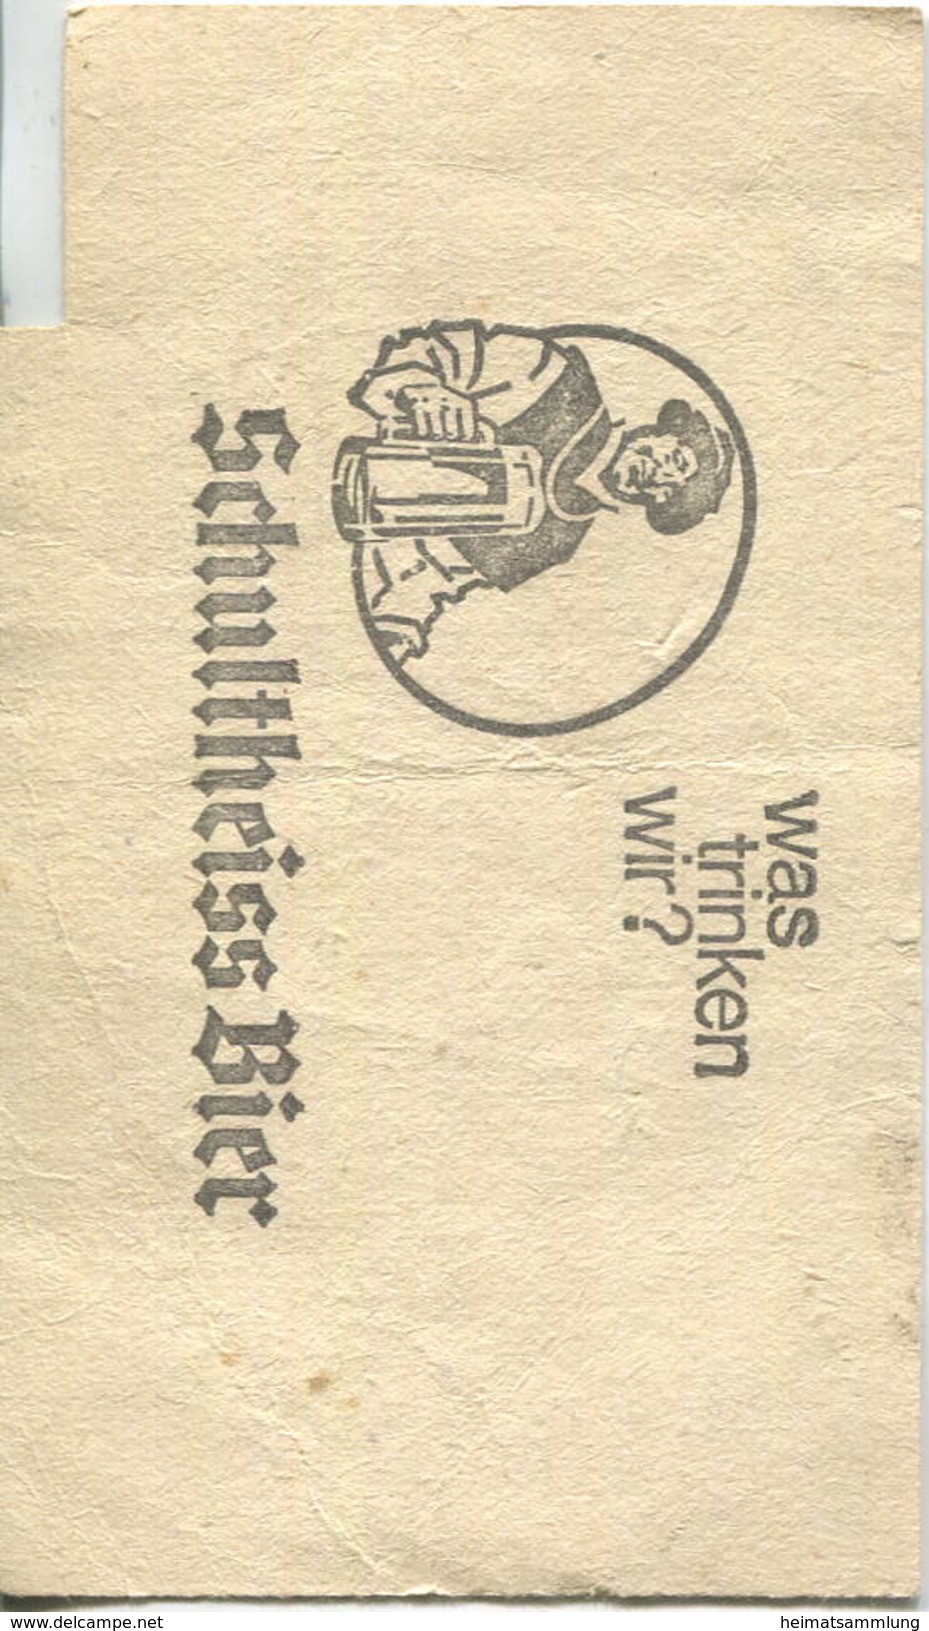 Deutschland - Berlin - Sammelkarte U-Bahn 5 Fahrten Ohne Umsteigeberechtigung 1970 - Rückseitig Werbung Schultheiss-Bier - Europa